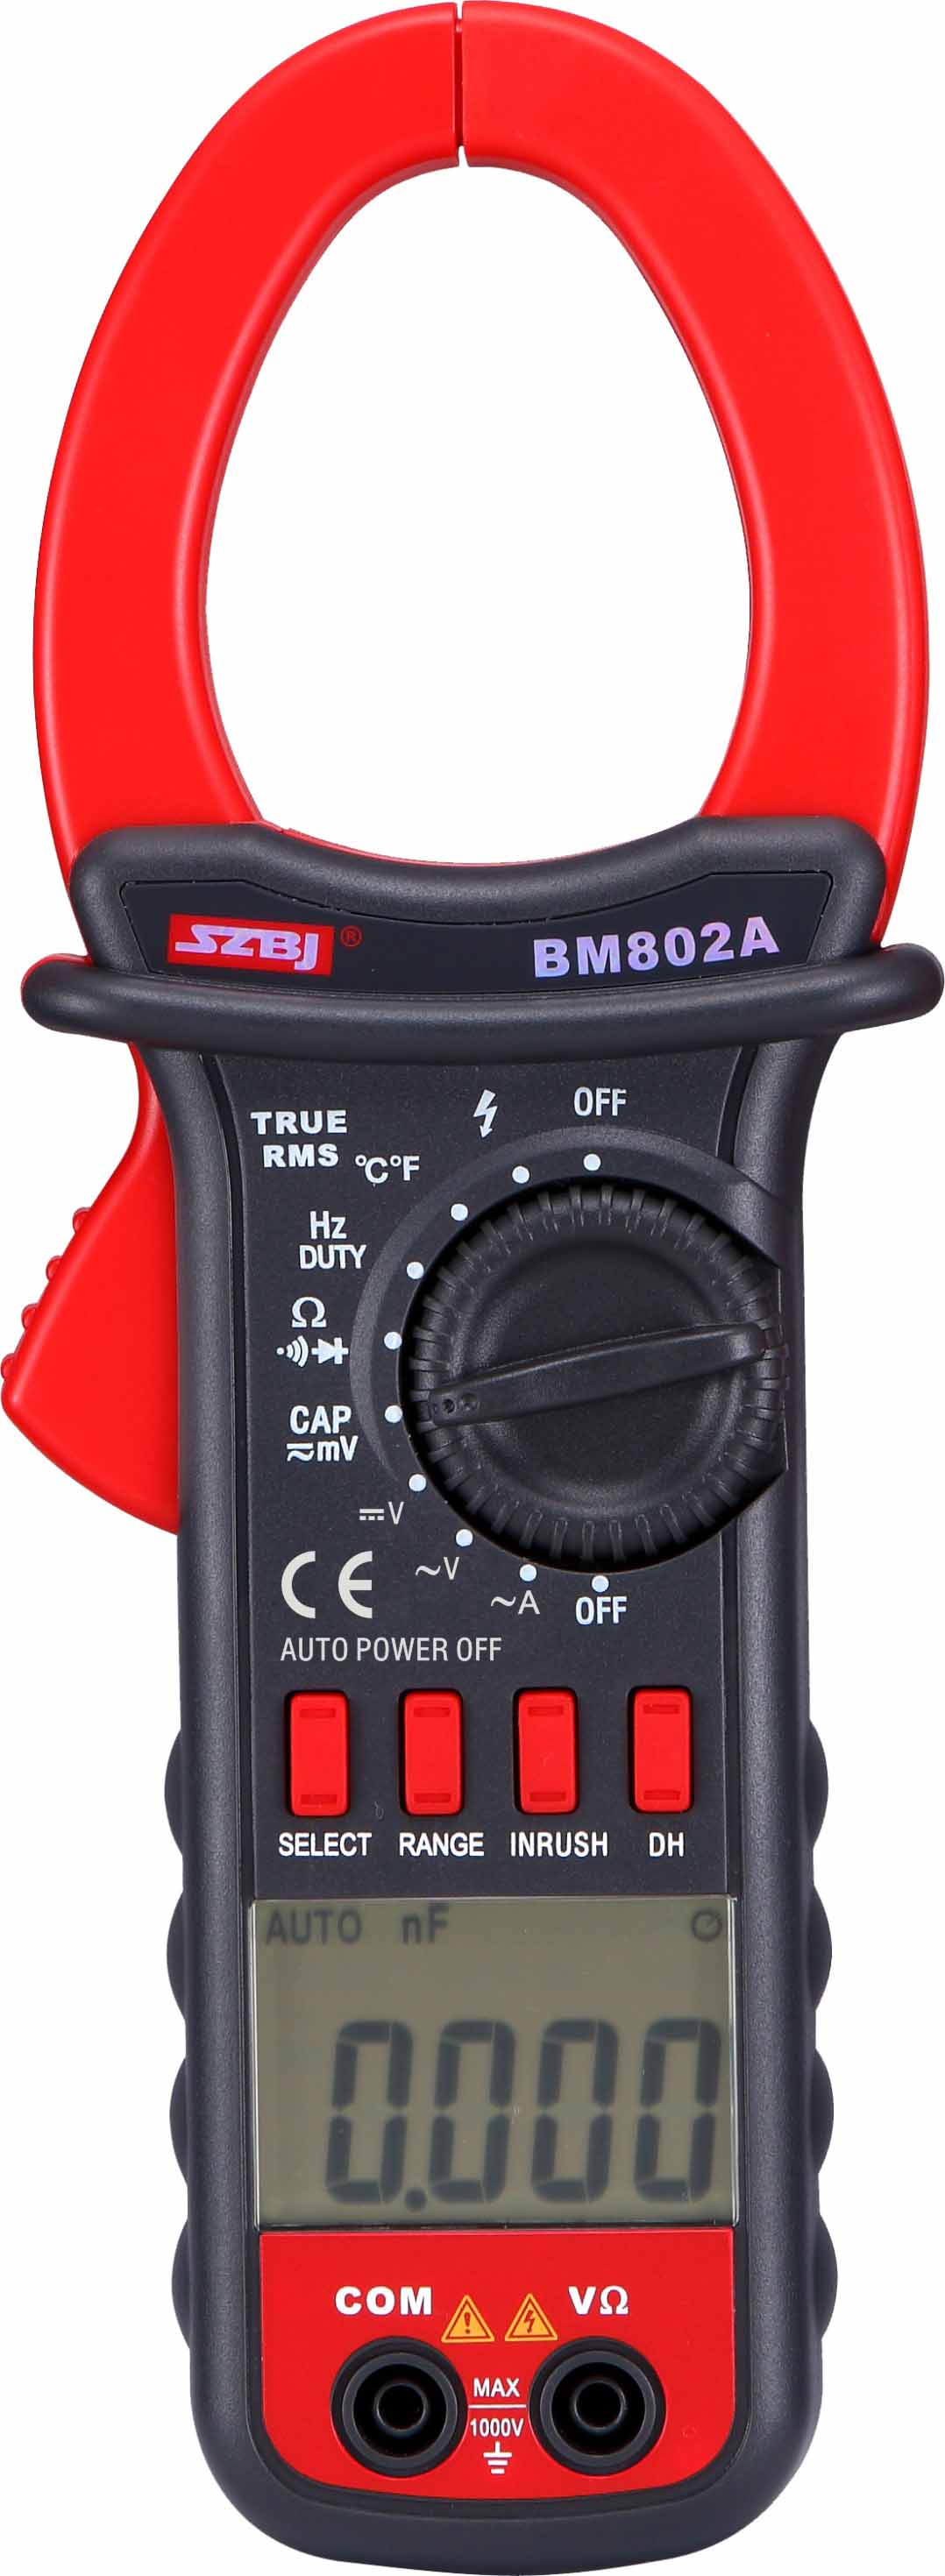 BM802A-2020